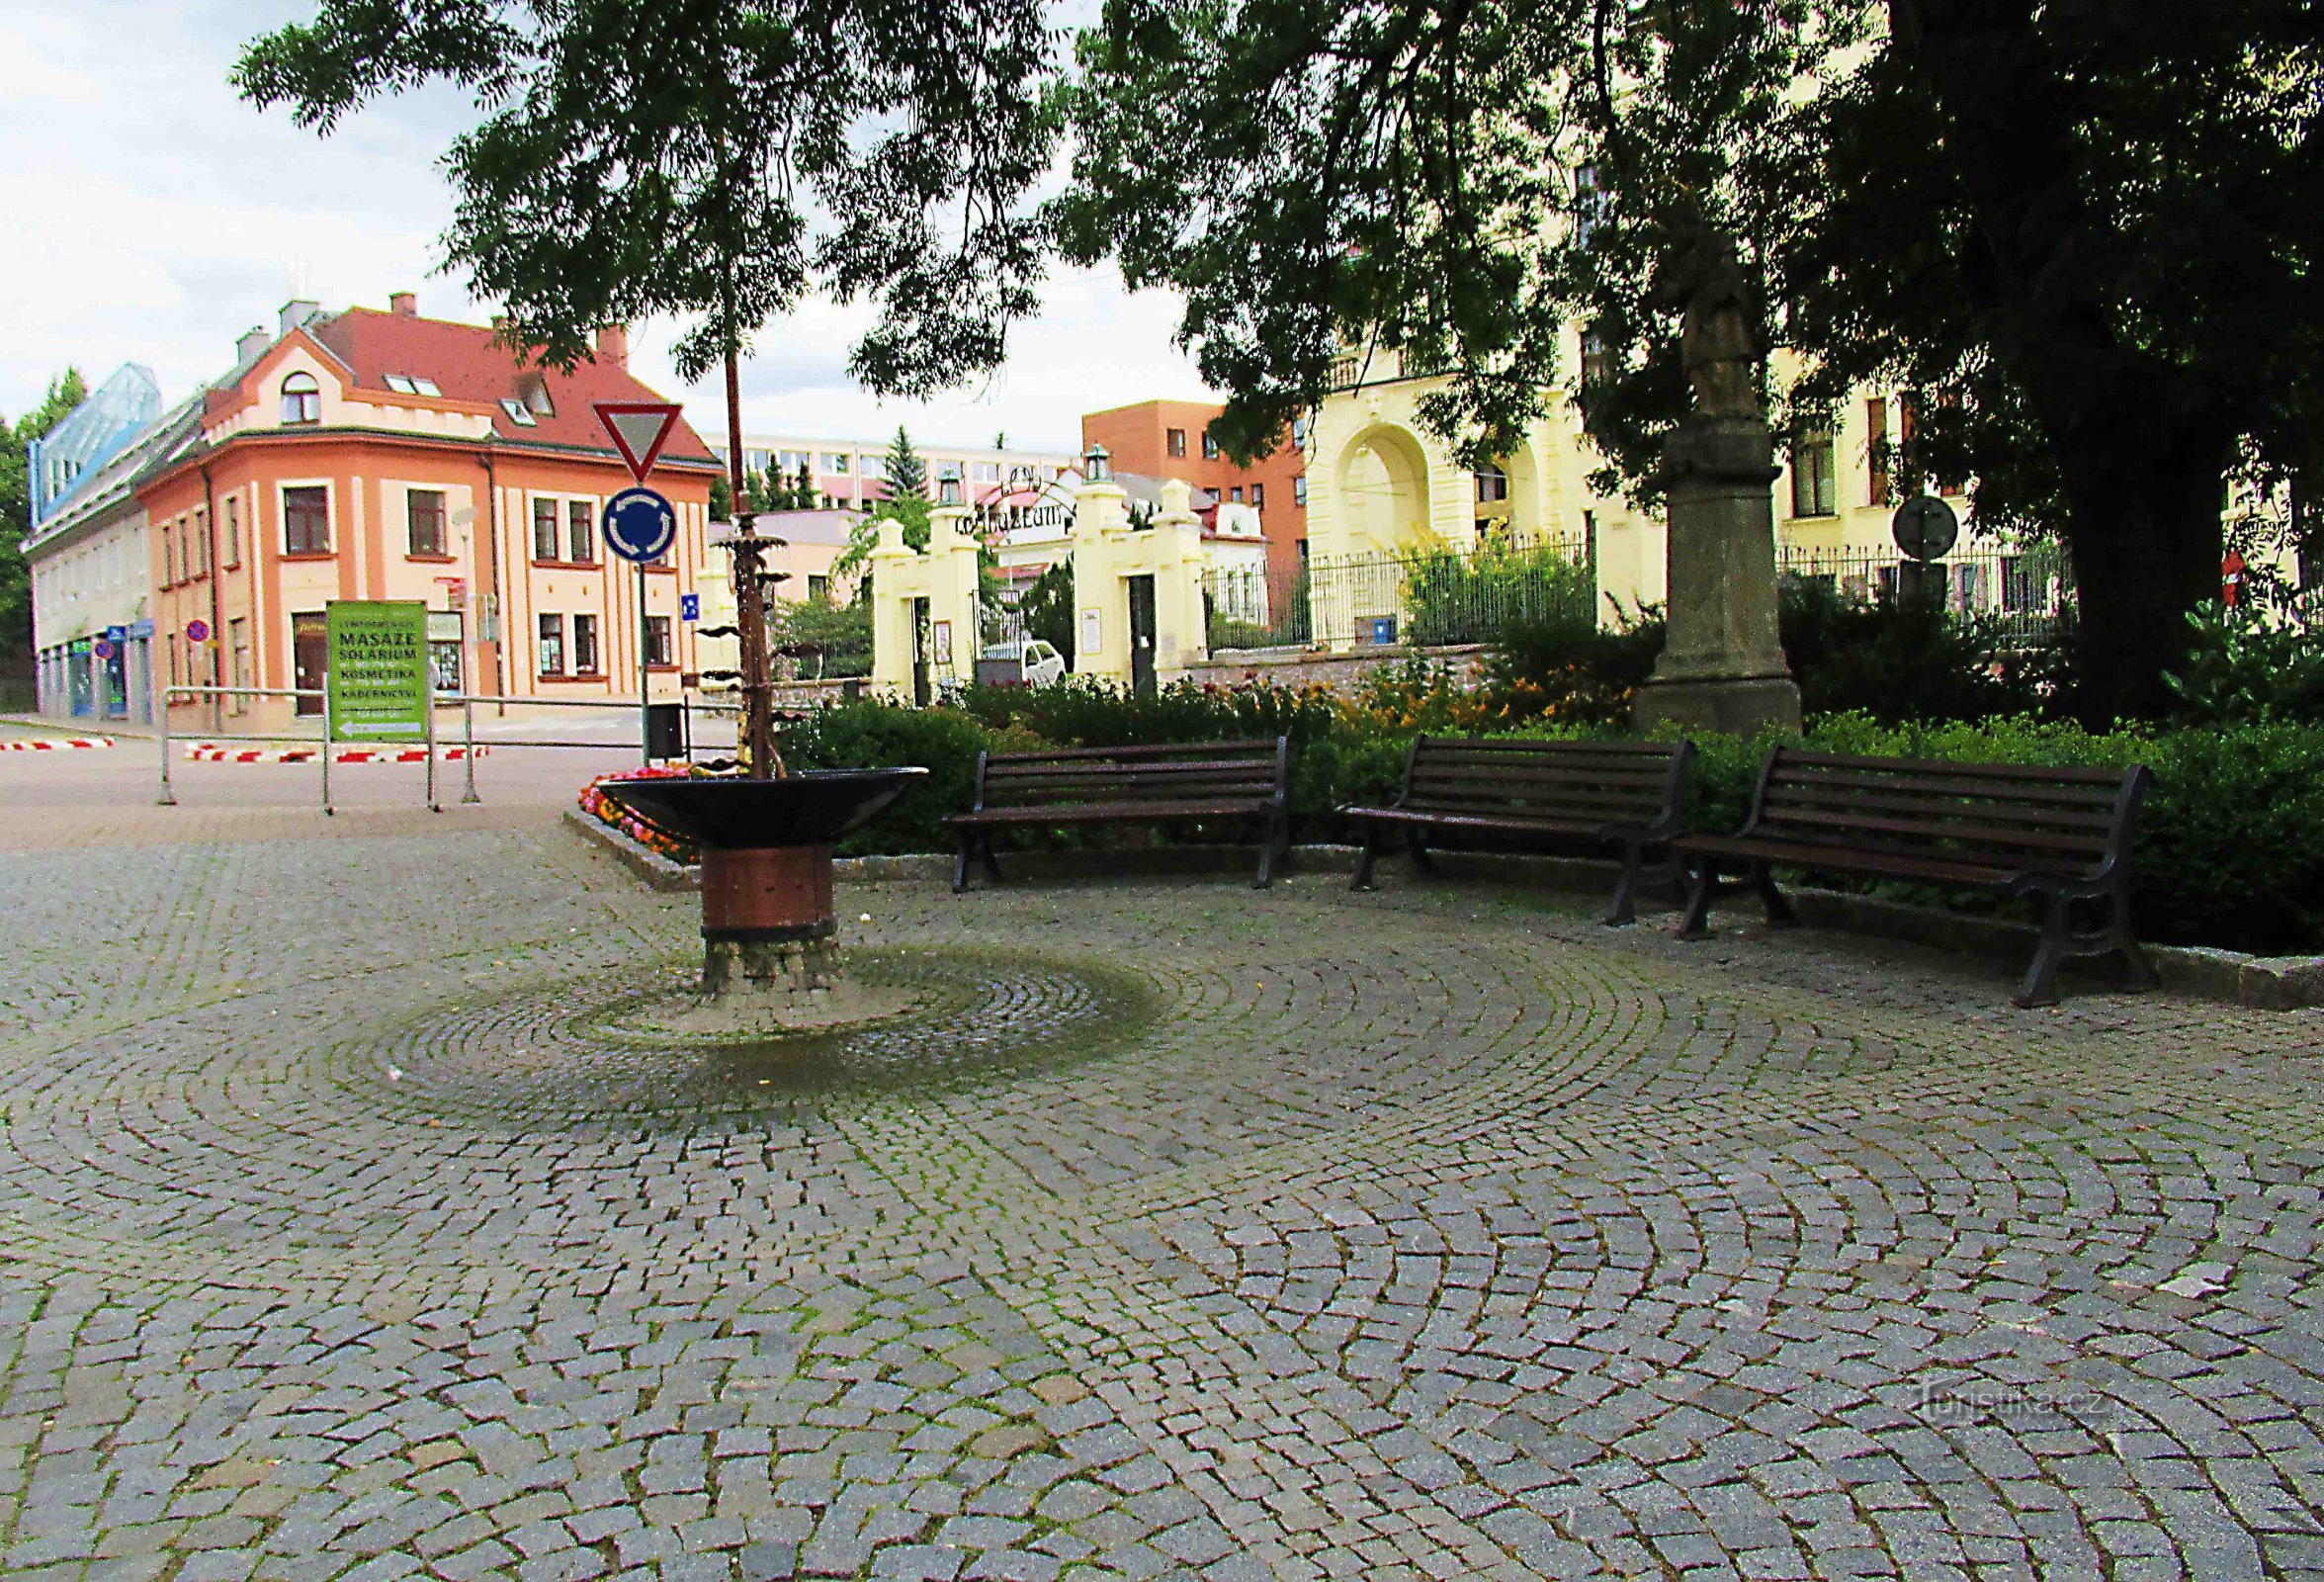 Sediu reprezentativ - vila Hernych din Ústí nad Orlicí